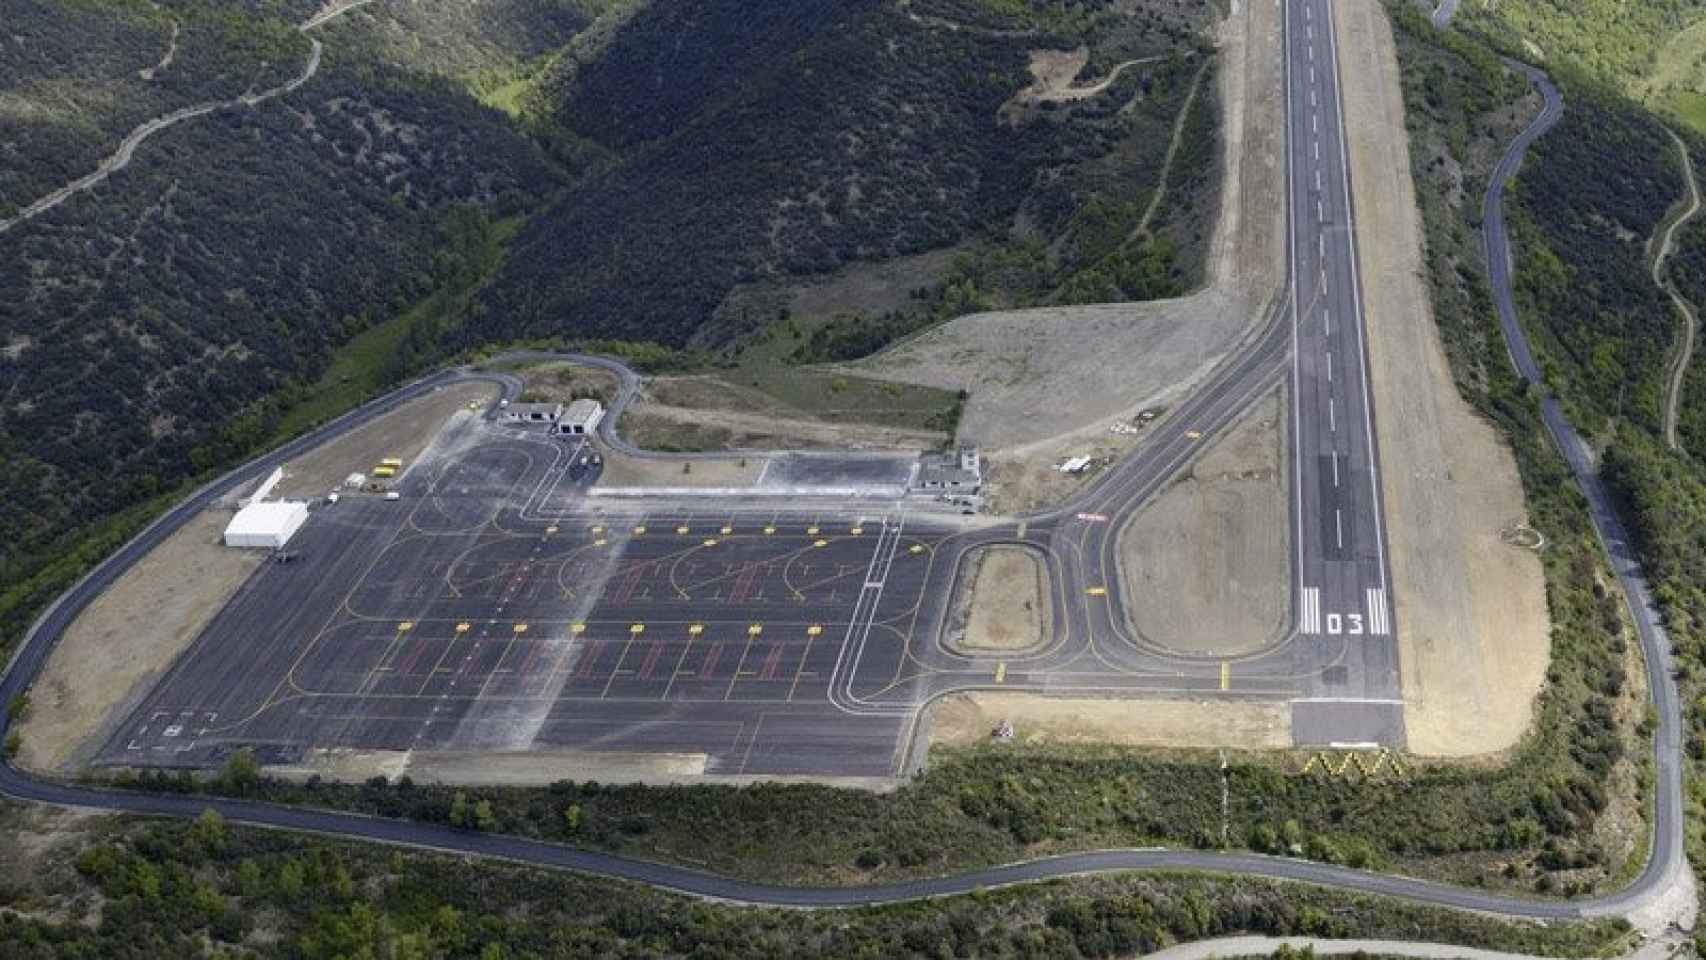 El aeropuerto de la Seu d'Urgell (Lleida) se encuentra a menos de media hora por carretera de Andorra la Vella